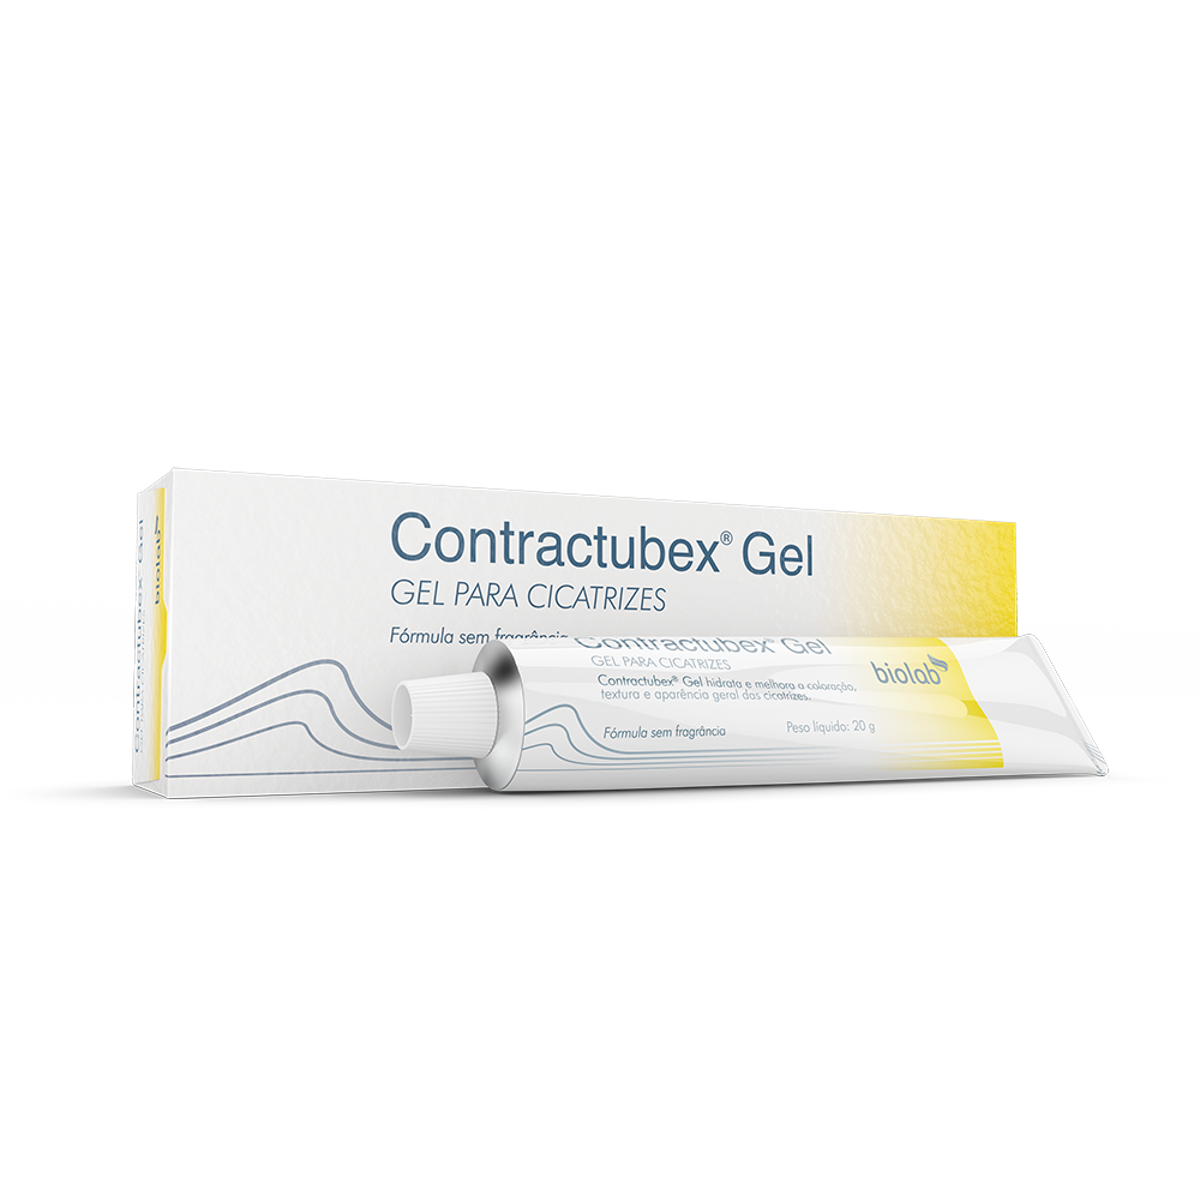 Contractubex Gel 20g